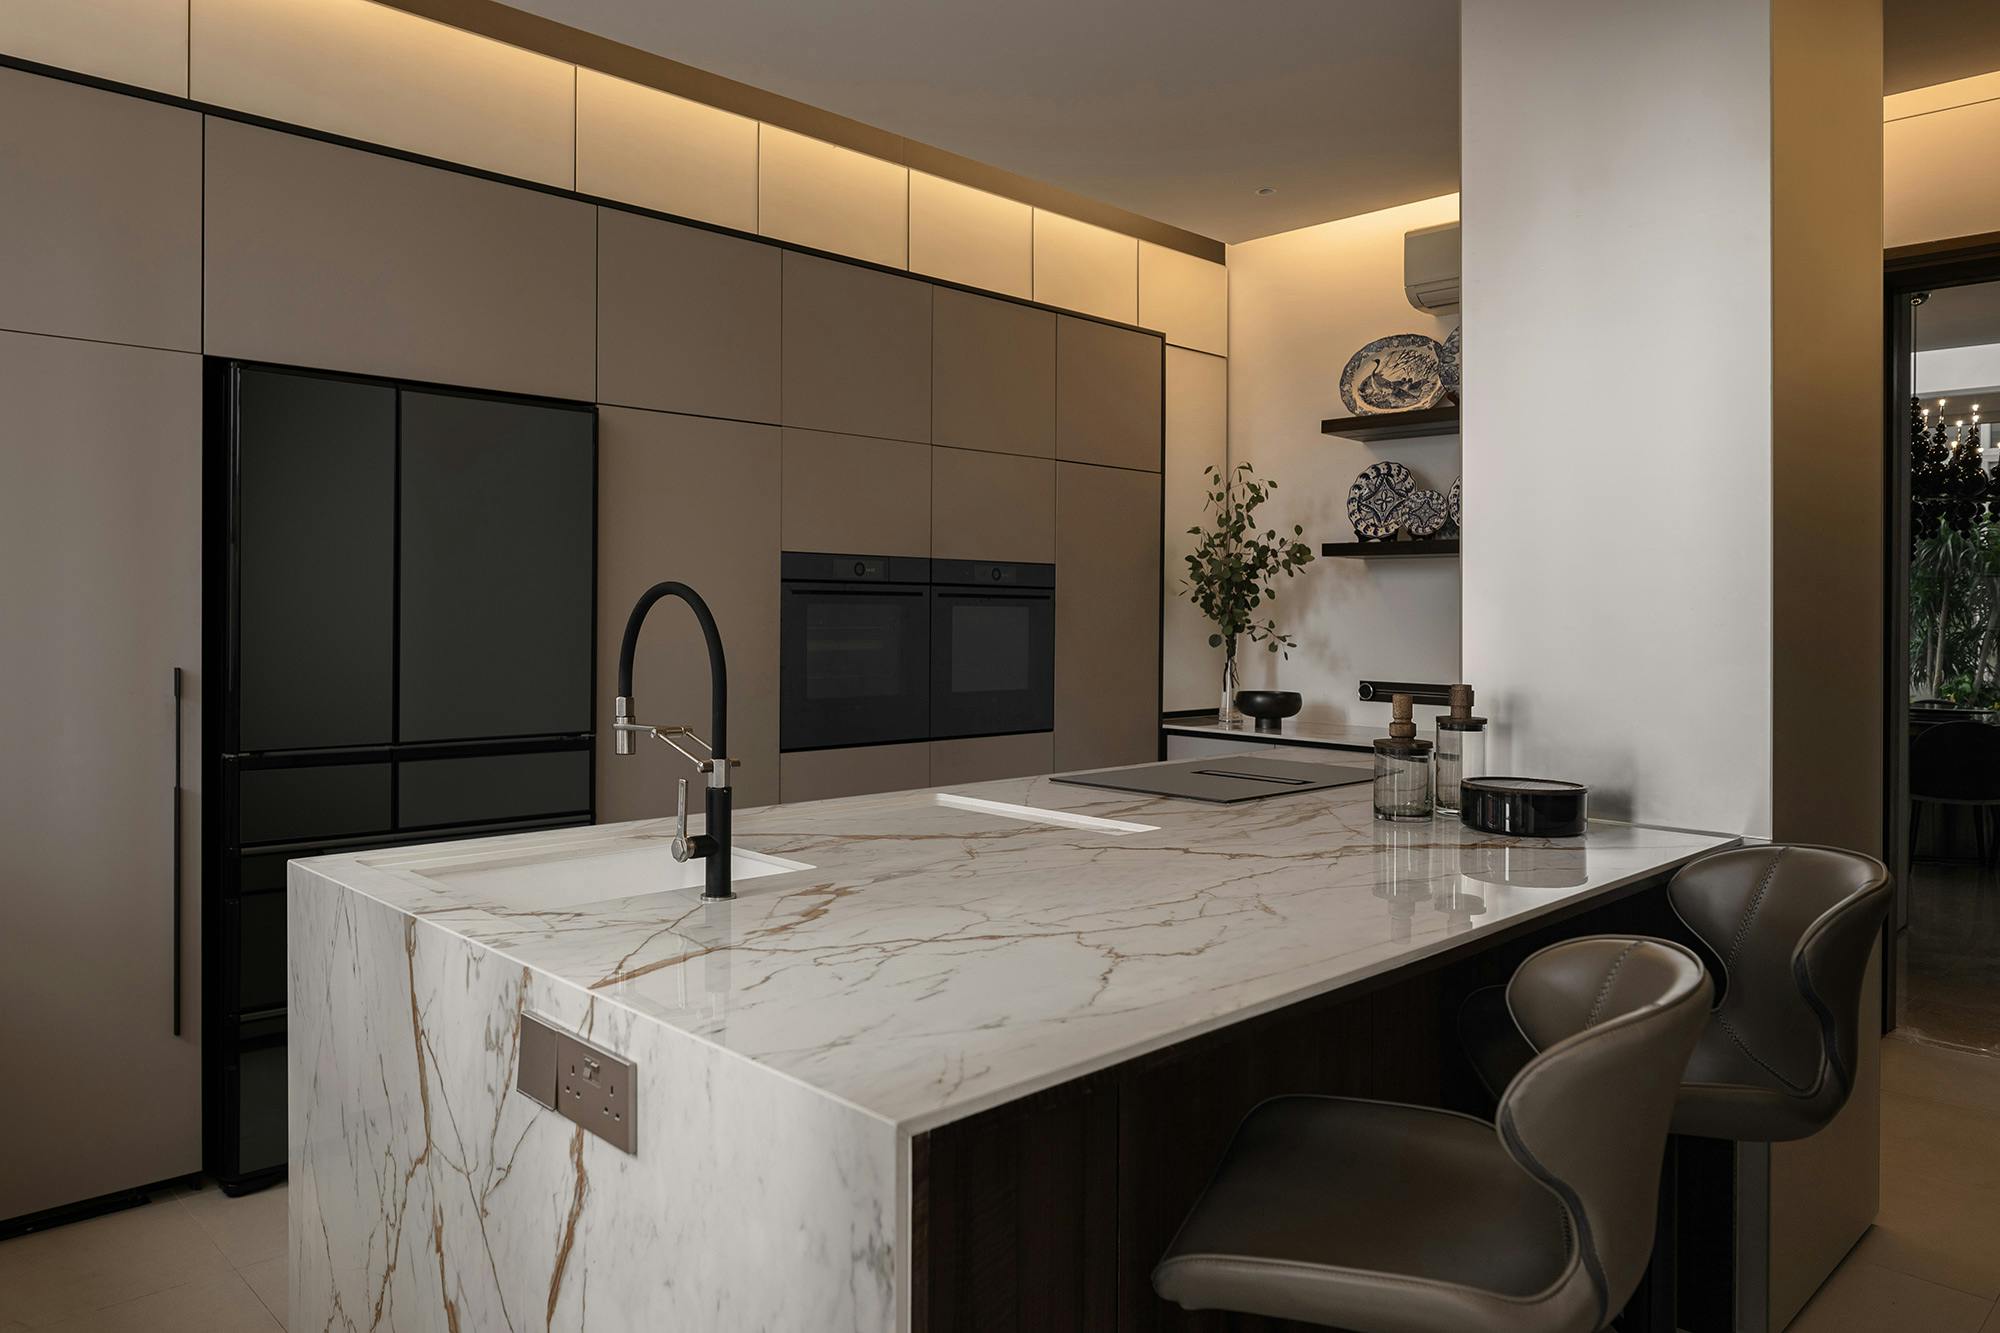 Bildnummer 40 des aktuellen Abschnitts von An open concept kitchen by MS2 Design Studio in a luxury South Beach condo von Cosentino Österreich